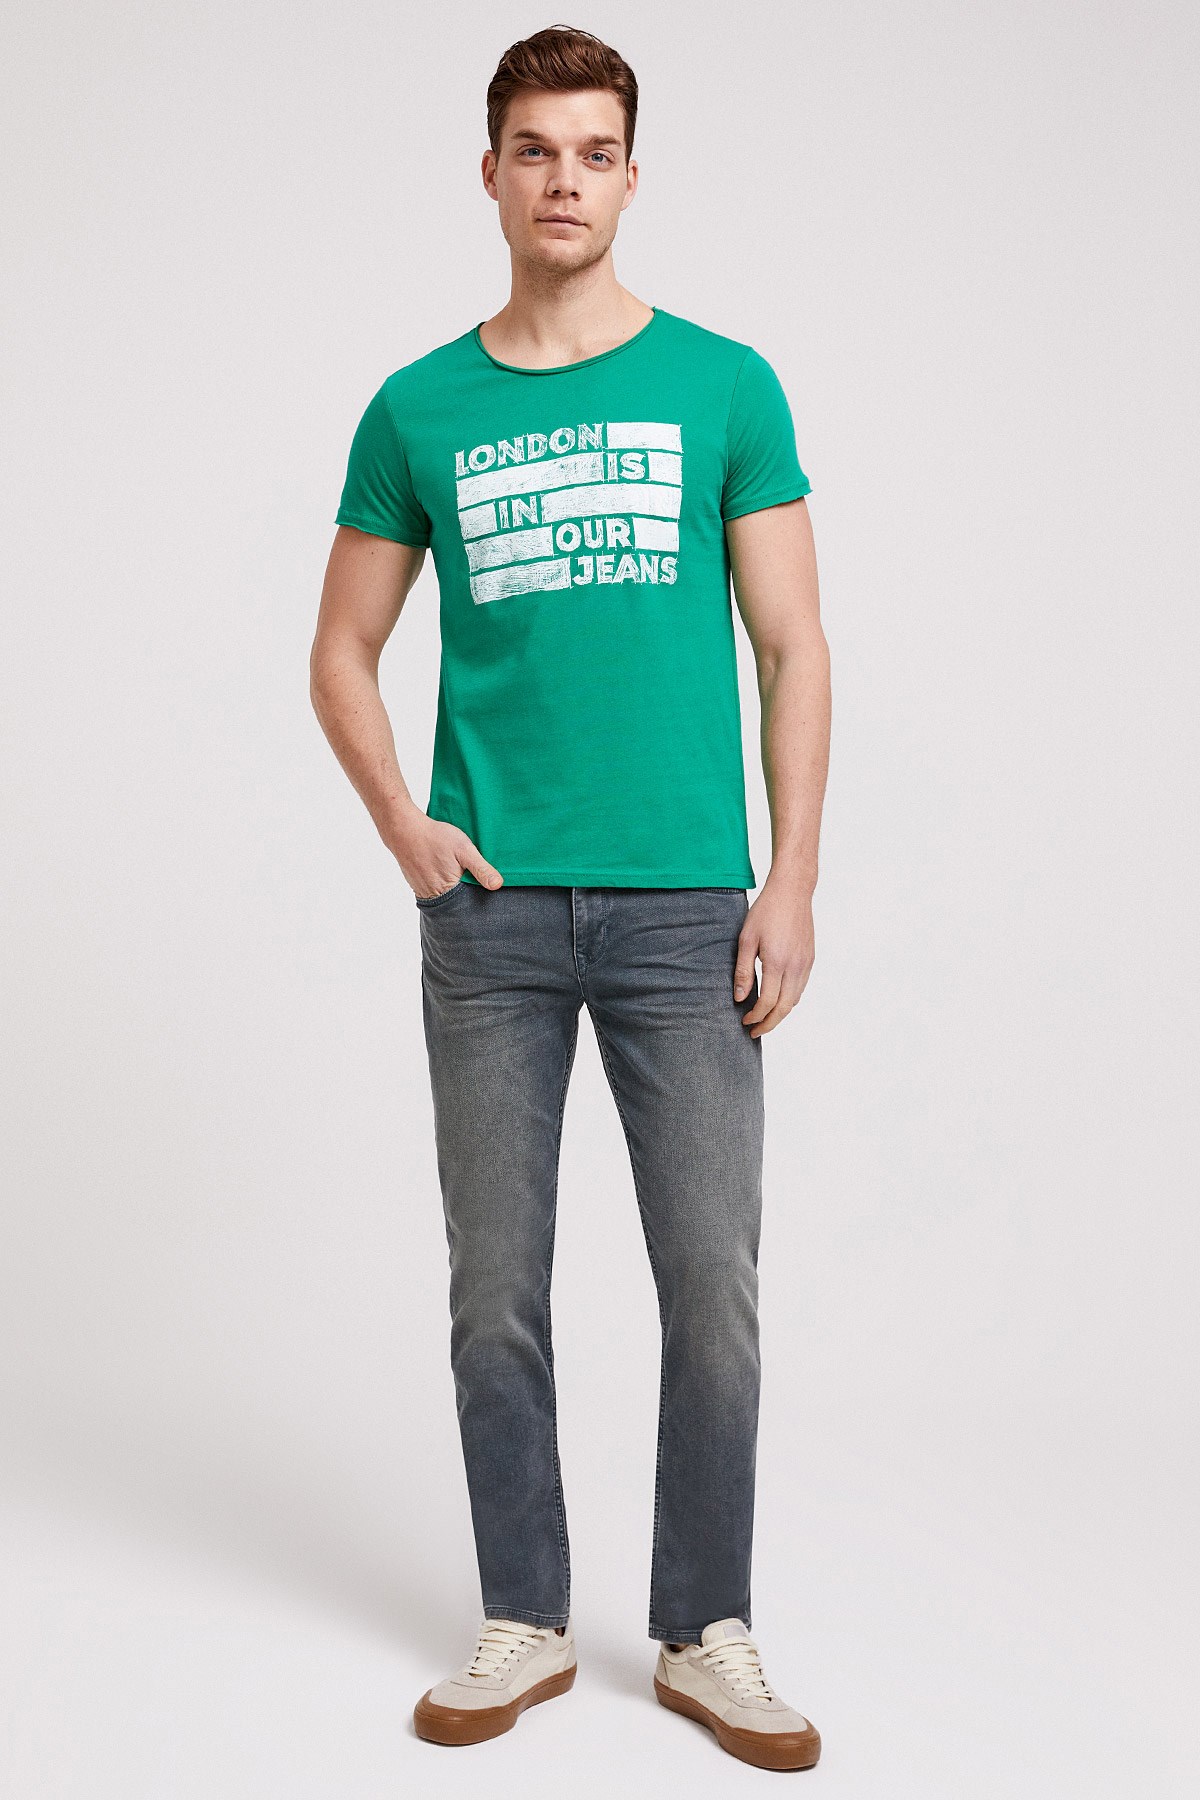 Lee Cooper Erkek T-Shirt 202 LCM 242019 Açık Yeşil